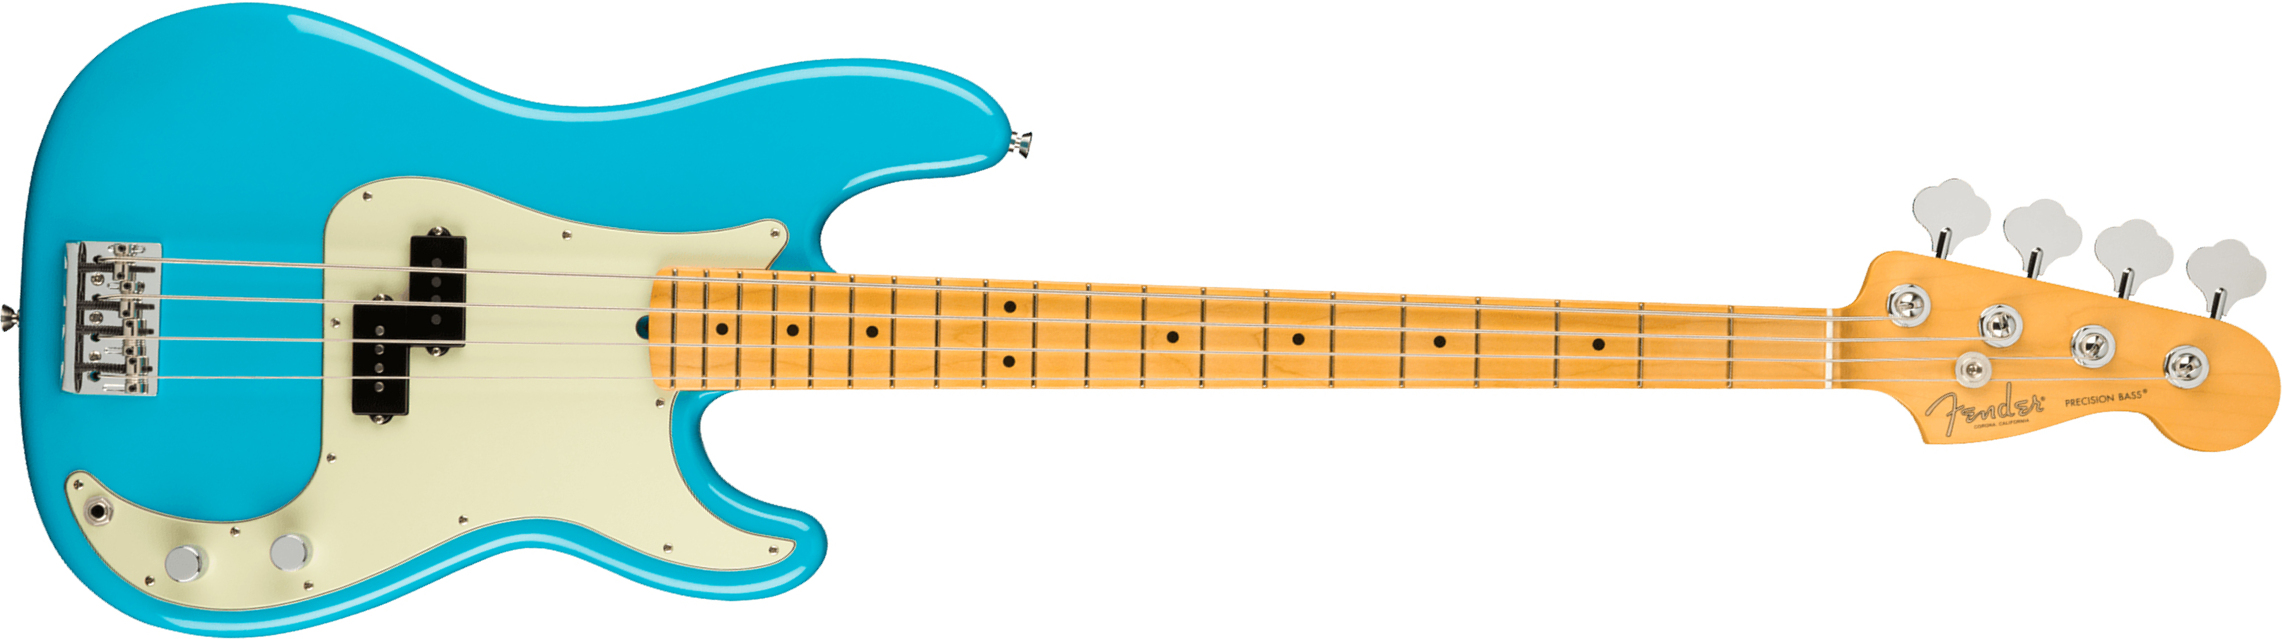 Fender Precision Bass American Professional Ii Usa Mn - Miami Blue - Solidbody E-bass - Main picture